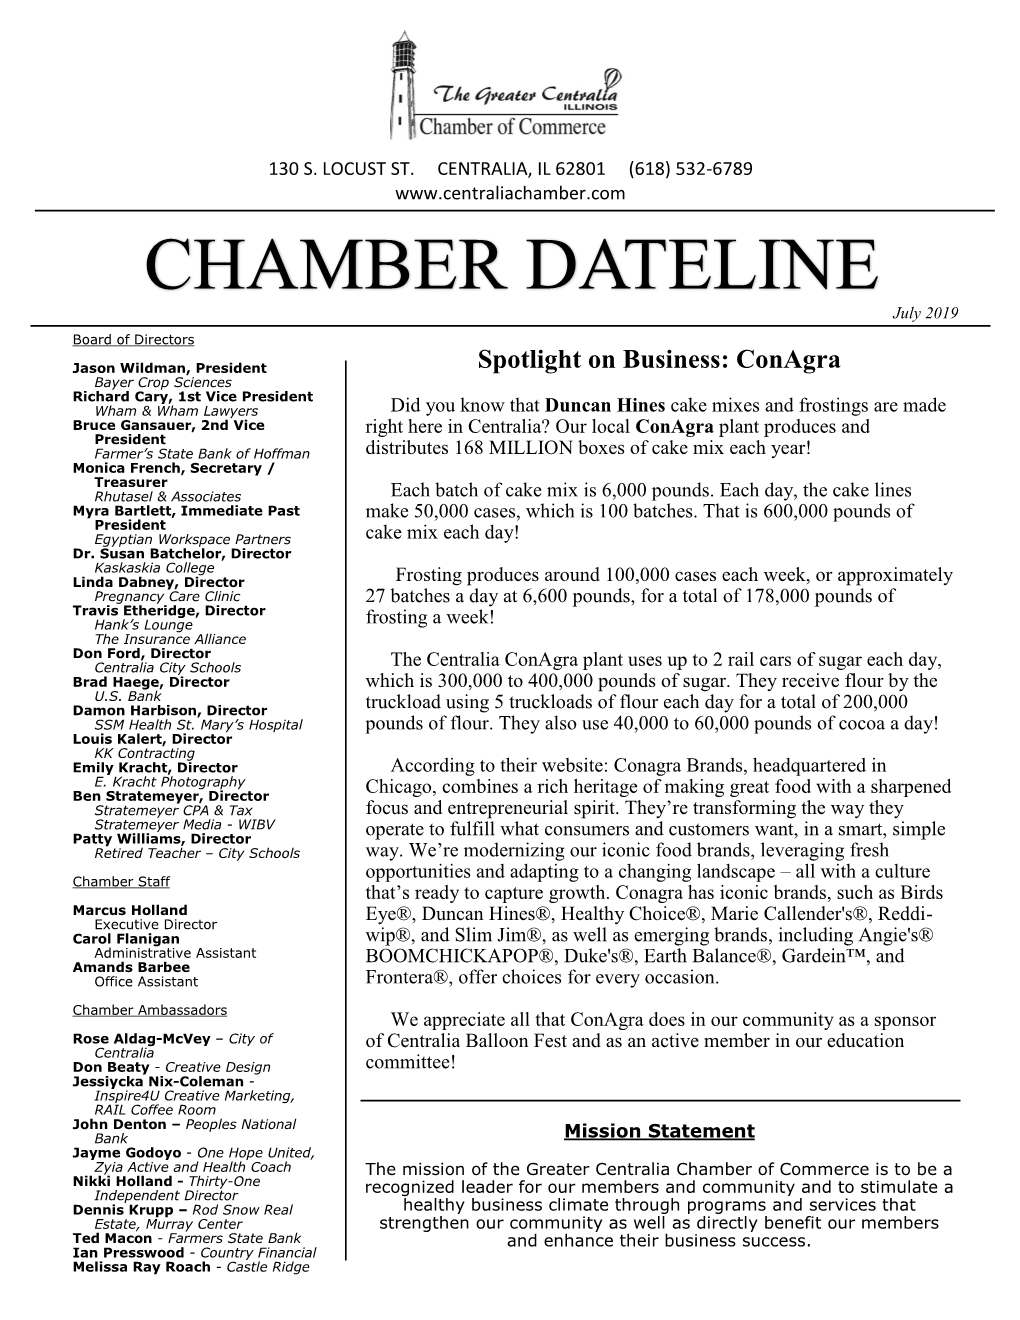 CHAMBER DATELINE July 2019 Board of Directors